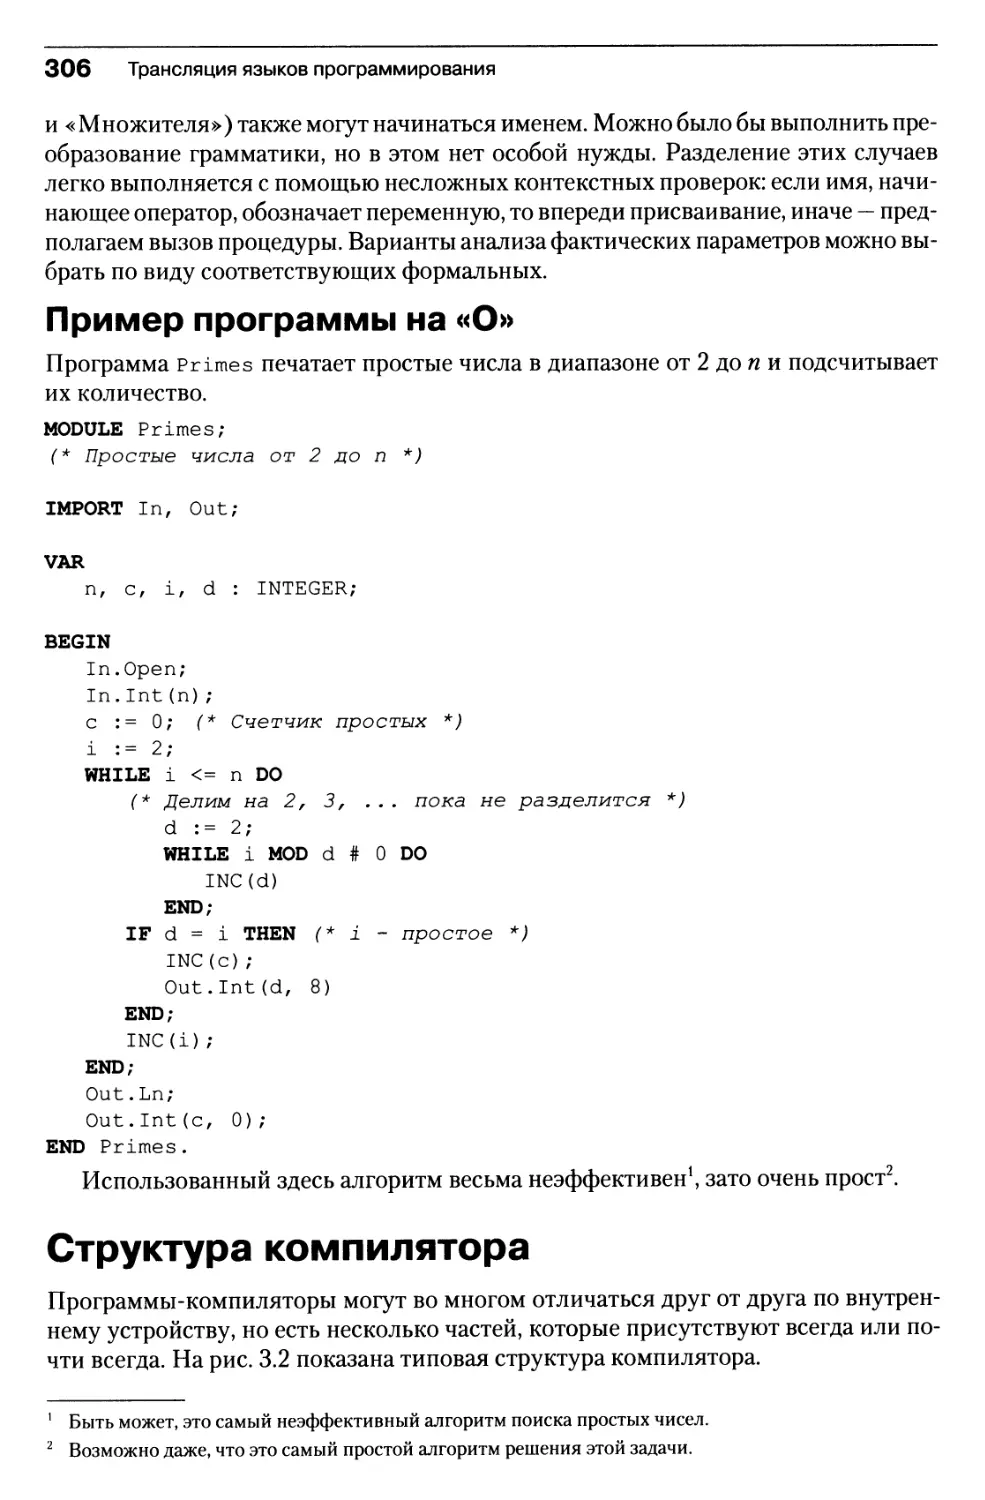 Пример программы на «О»
Структура компилятора